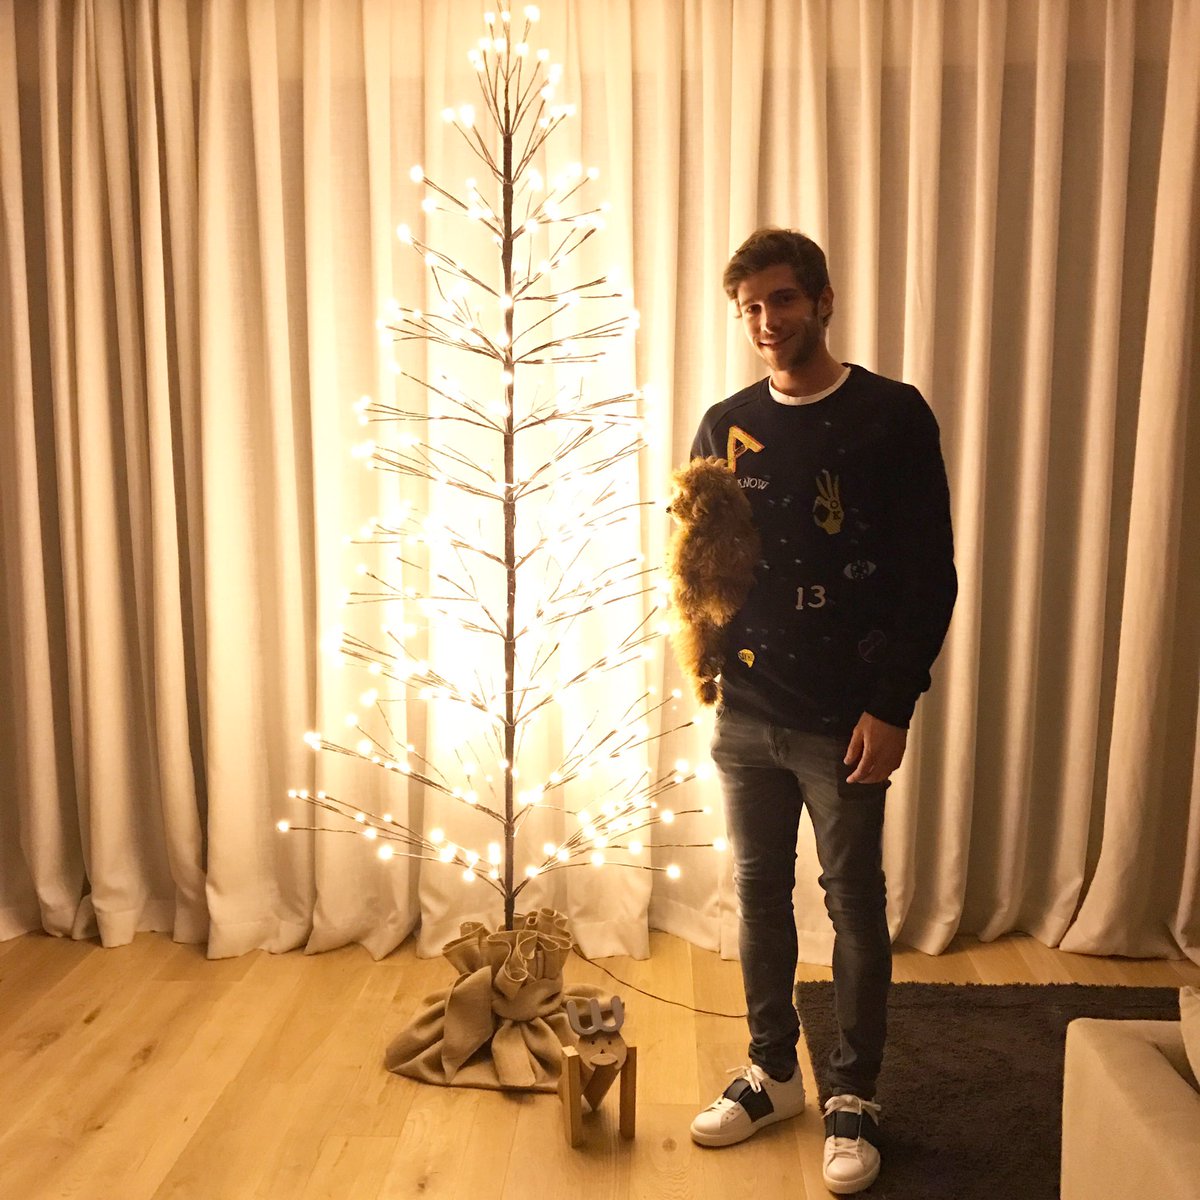 سيرجى روبيرتو مدافع برشلونة يحتفل بجانب شجرة الكريسماس